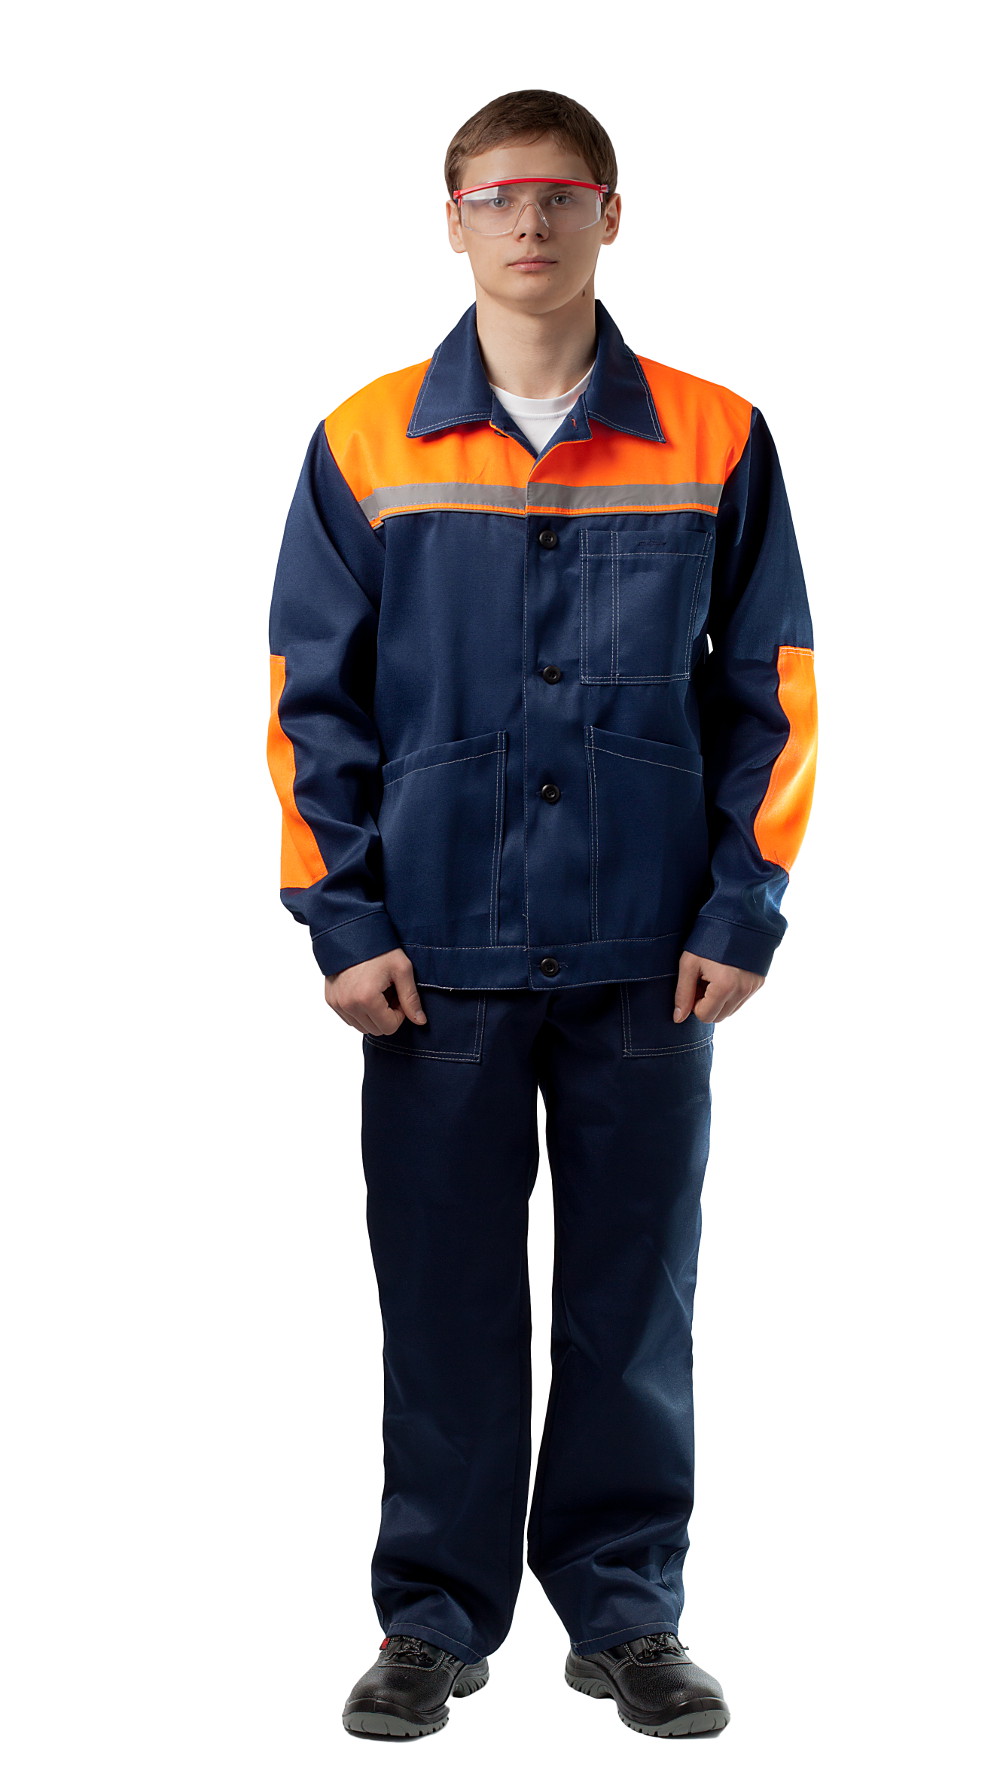 ДНК 109 Костюм «Конвейер» (куртка и полукомбинезон), цвет синий + оранжевый от интернет магазина dnk-specodegda.ru, приобрести днк 109 костюм «конвейер» (куртка и полукомбинезон), цвет синий + оранжевый